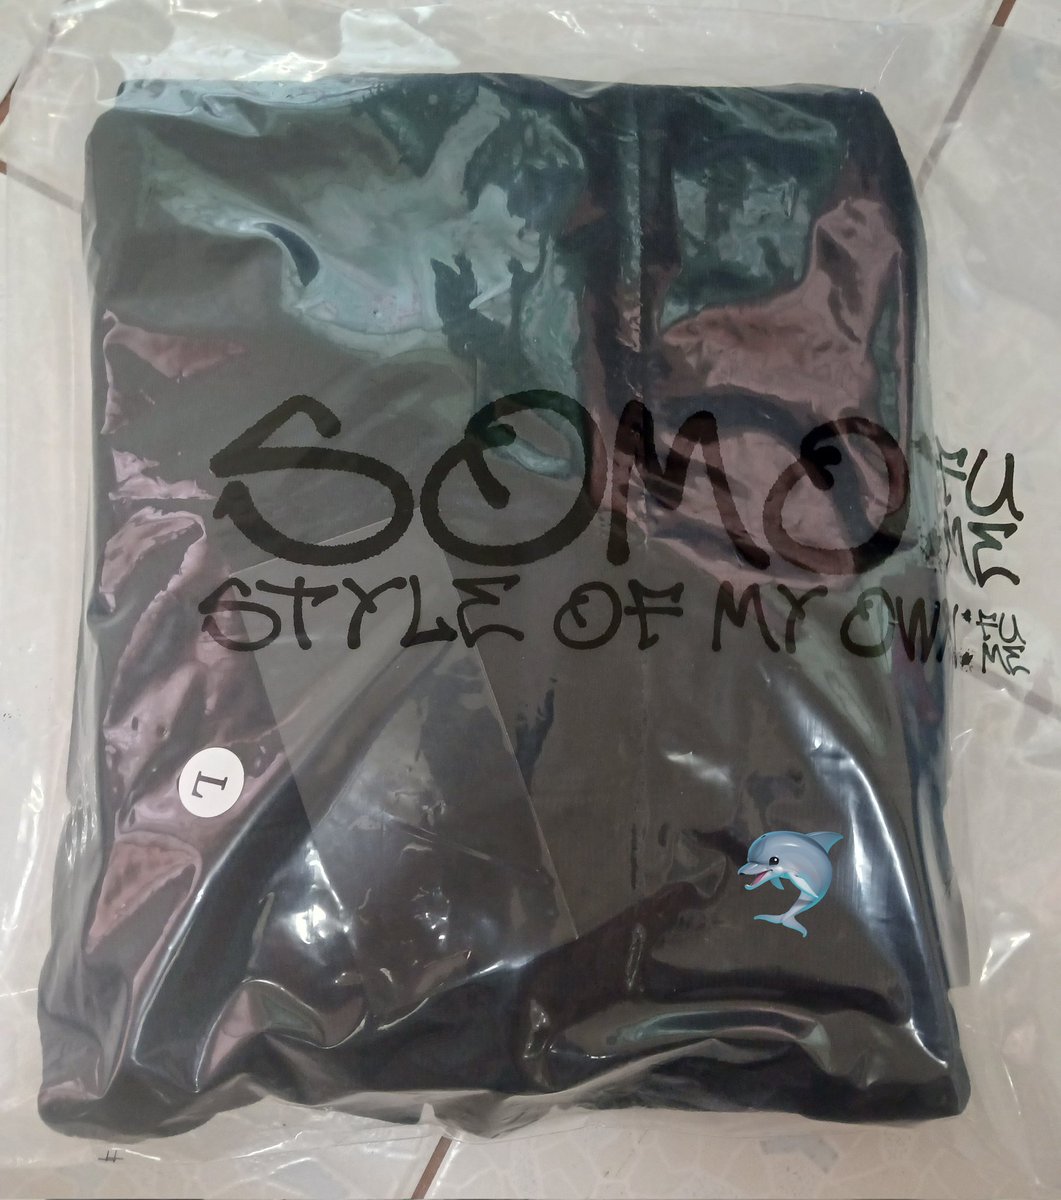 พร้อมส่ง เสื้อฮู้ด Somofume ของใหม่

ราคา 2,000 รวมส่ง สีดำ ไซส์ L 

#ตลาดนัดอากาเซ่got7  #ตลาดนัดอากาเช่ #ตลาดนัดกัซ #ขายของสะสมgot7 #ตลาดนัดอากาเซ่